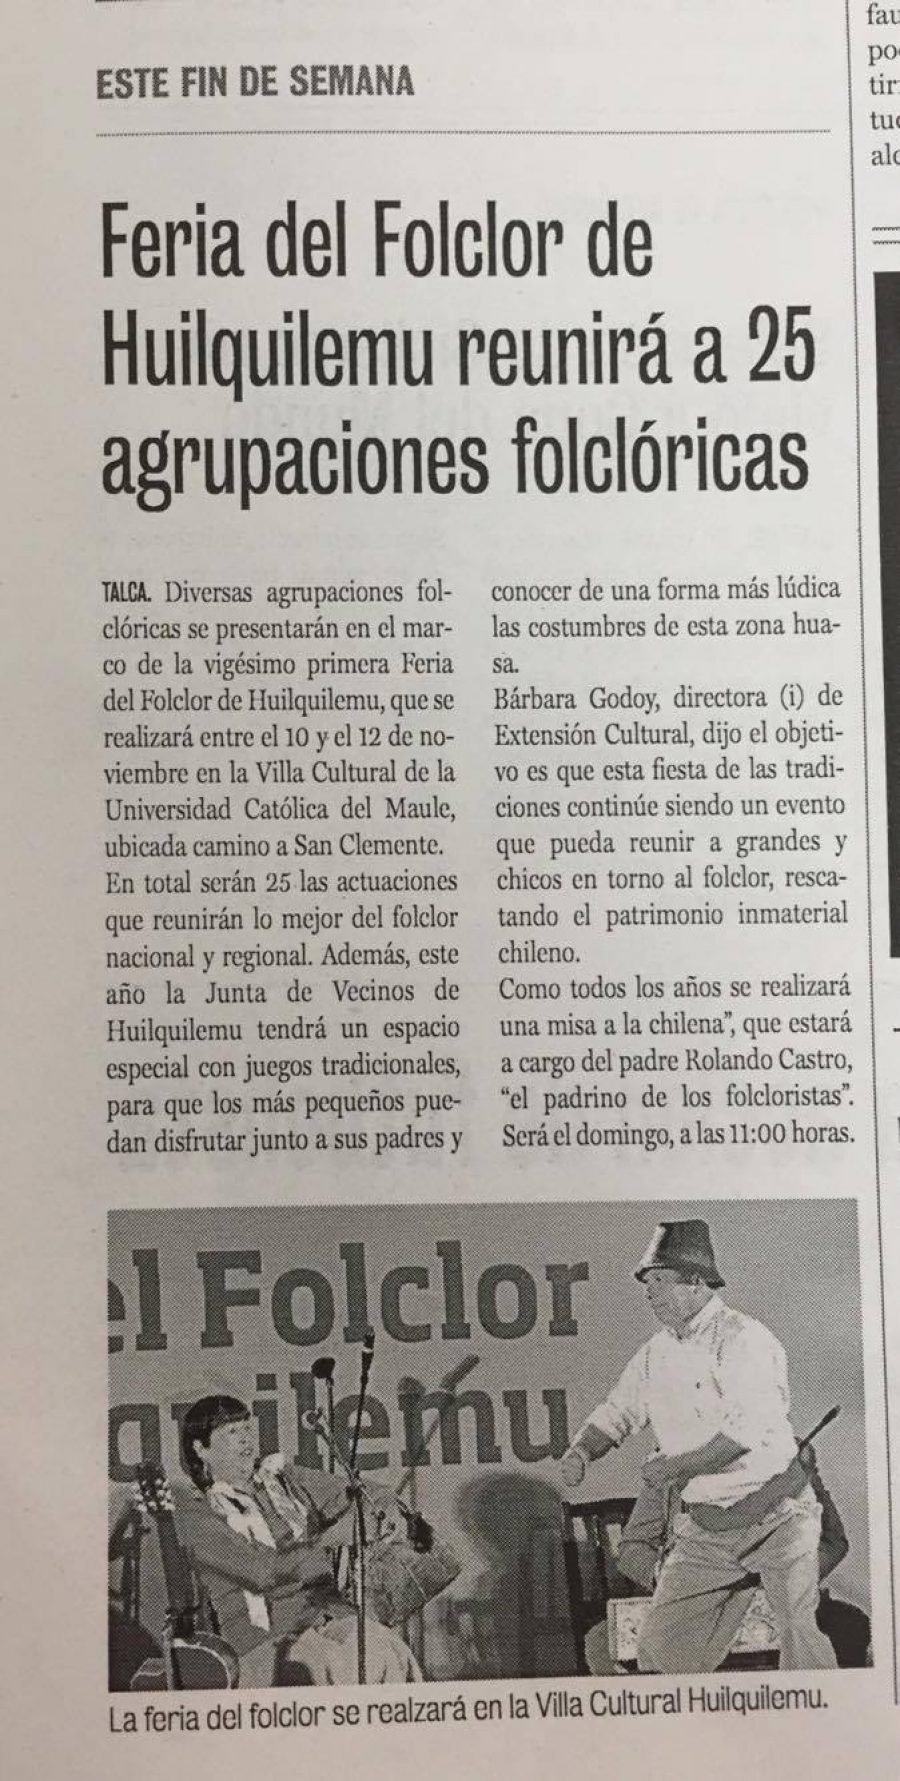 08 de noviembre en Diario La Prensa: “Feria del Folclor de Huilquilemu reunirá a 25 agrupaciones folclóricas”